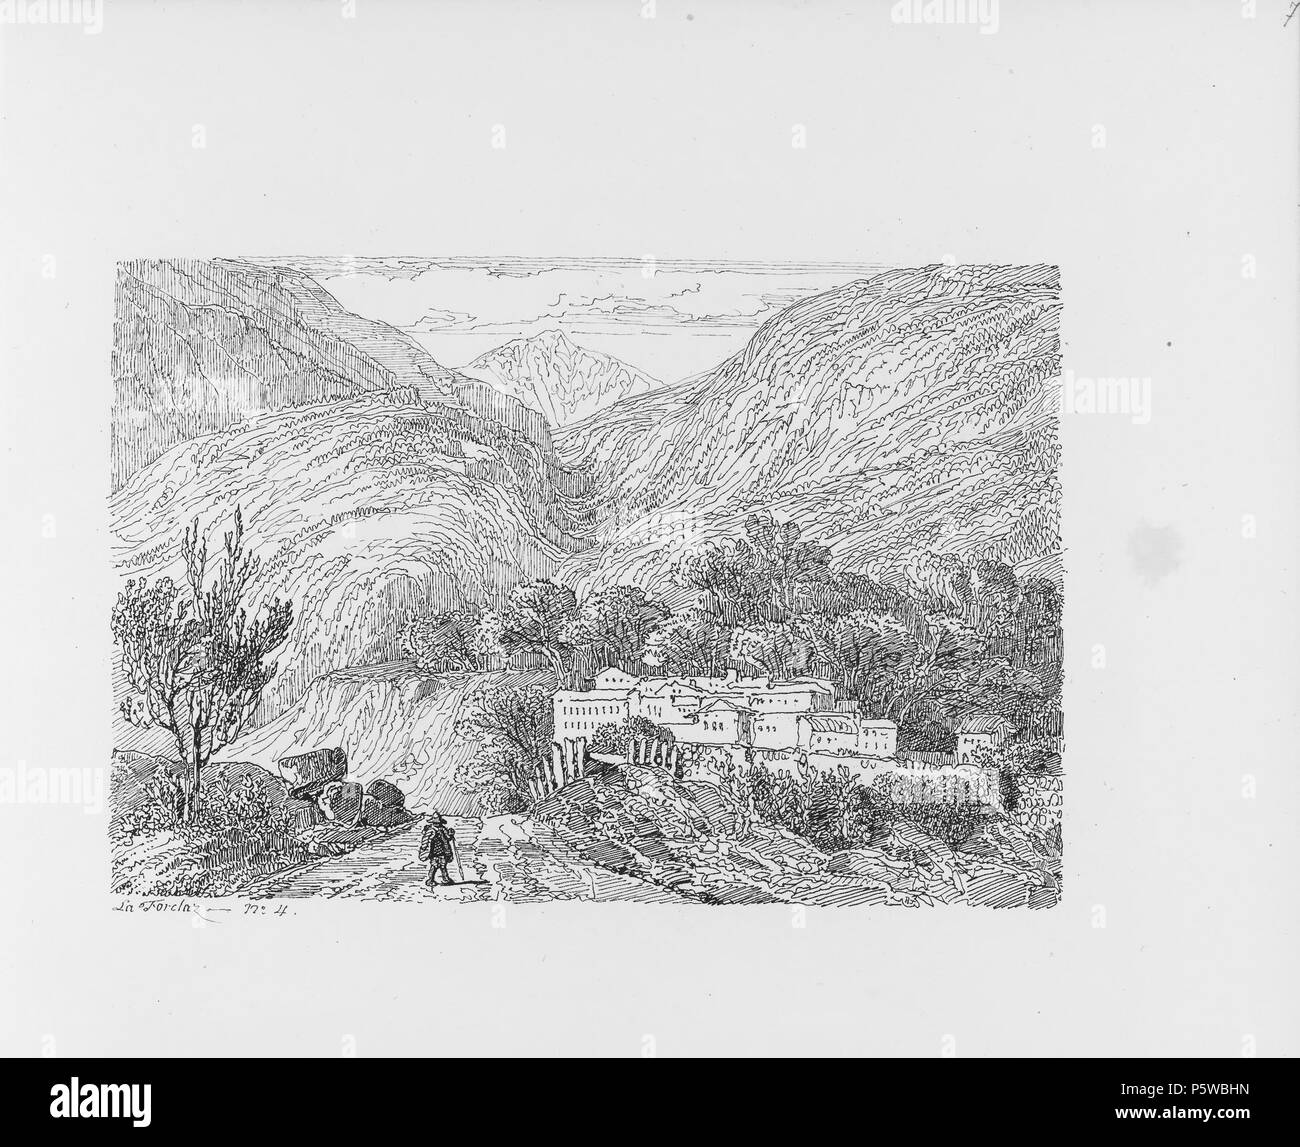 322 CH-NB-Voyage Autour du Mont-Blanc dans les vallées d'Hérens de Zermatt et au Grimsel 1843 - nbdig -19161-006 Stockfoto